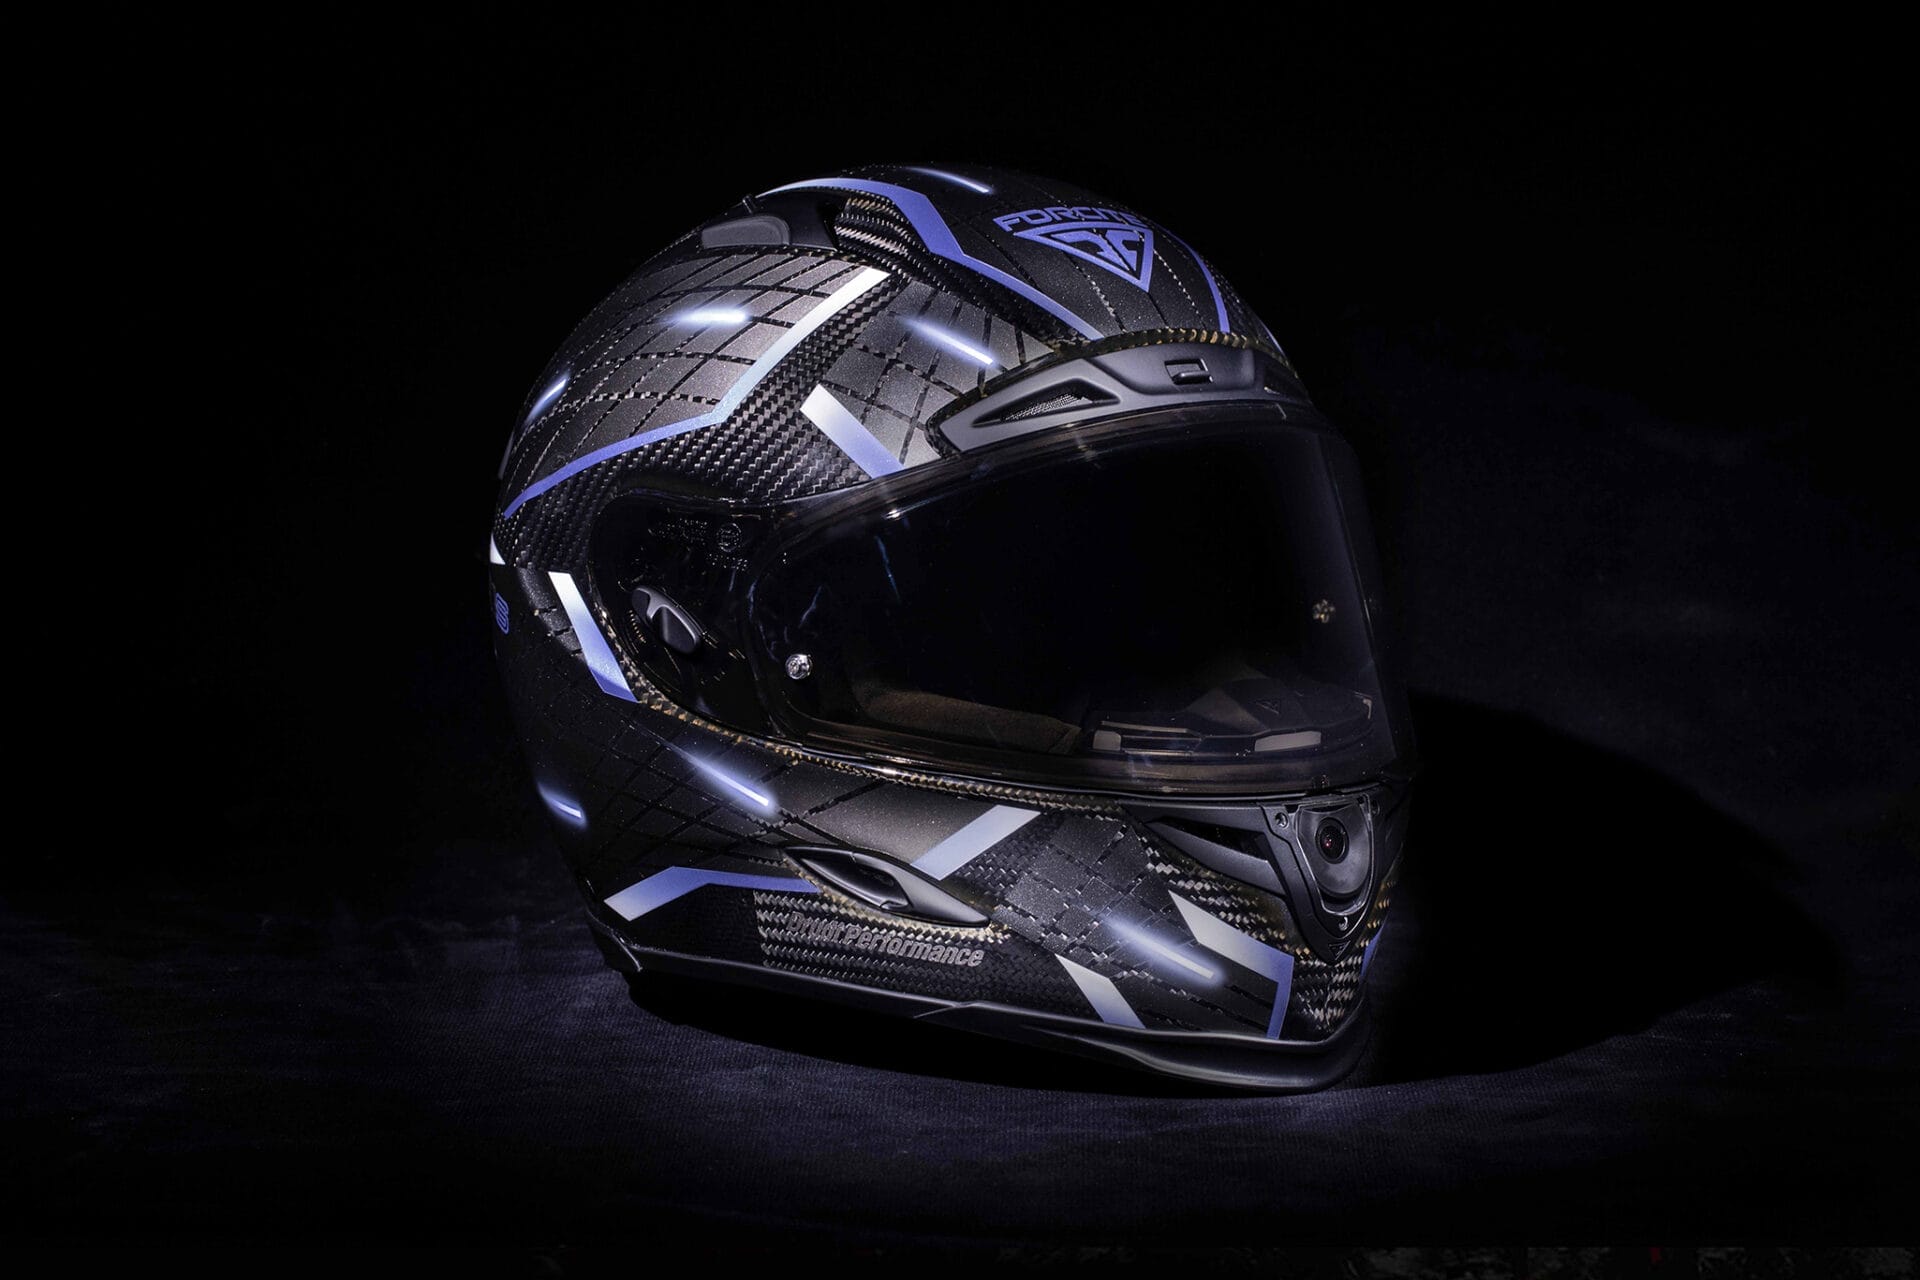 Motorradhelm von GoPro – Übernahme von Forcite Helmet Systems